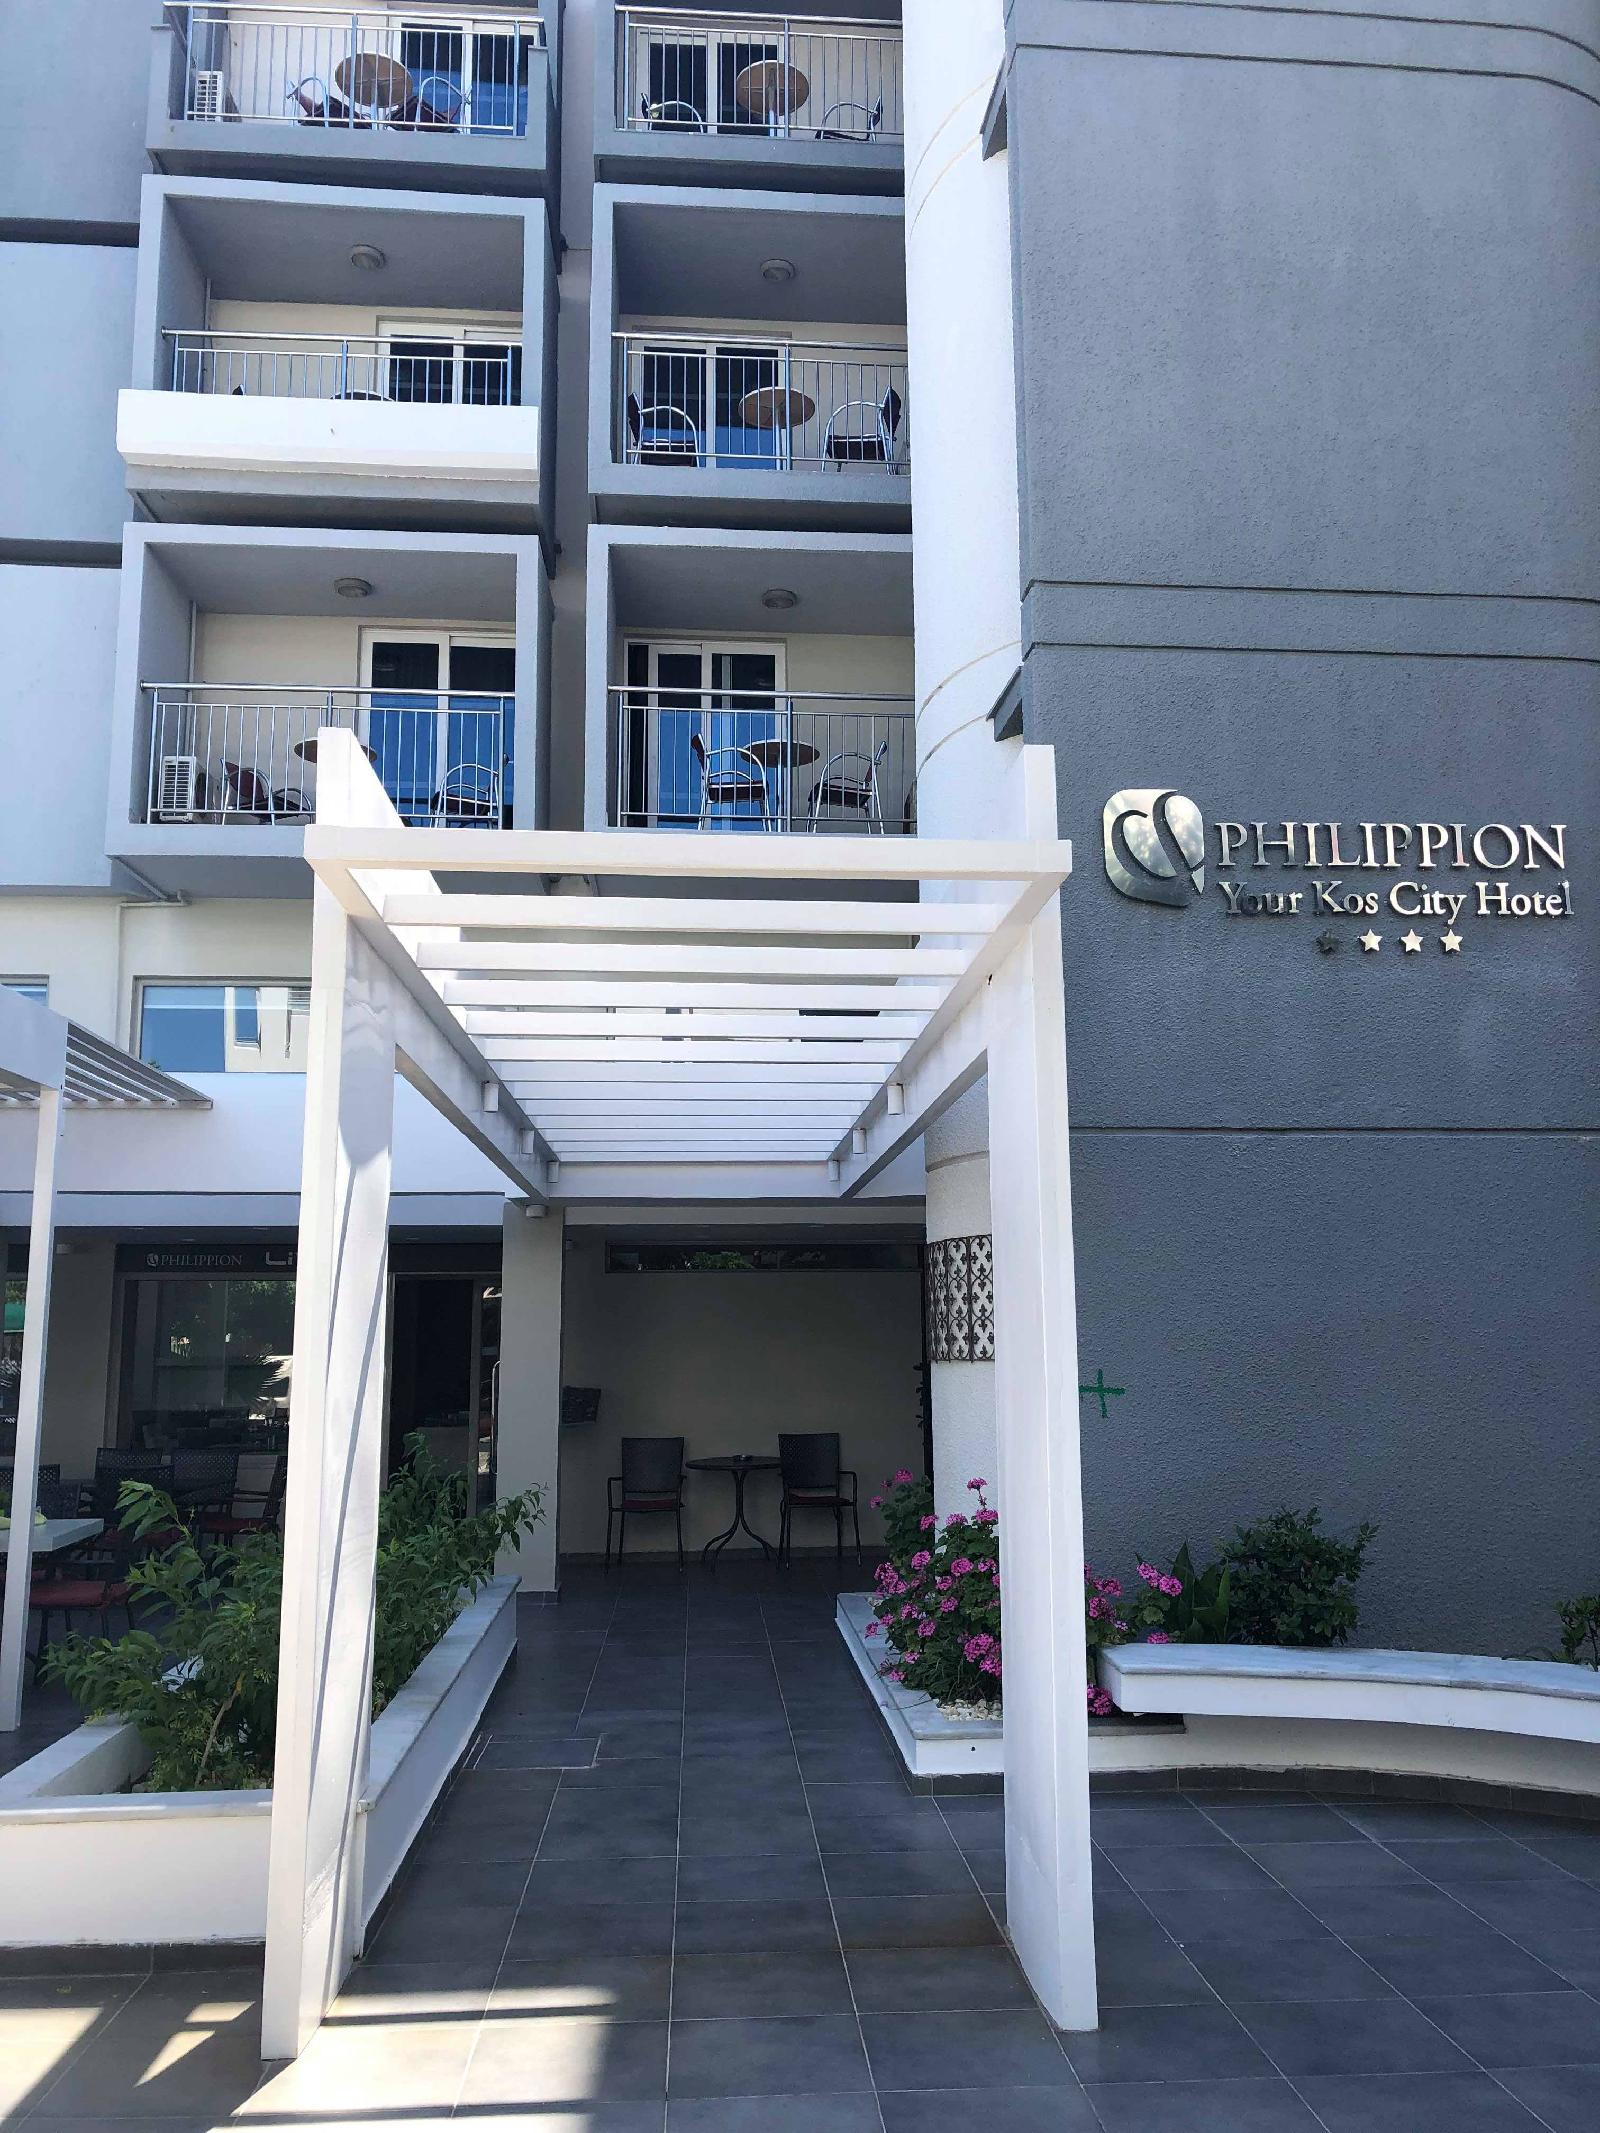 Philippion Hotel & Apartments